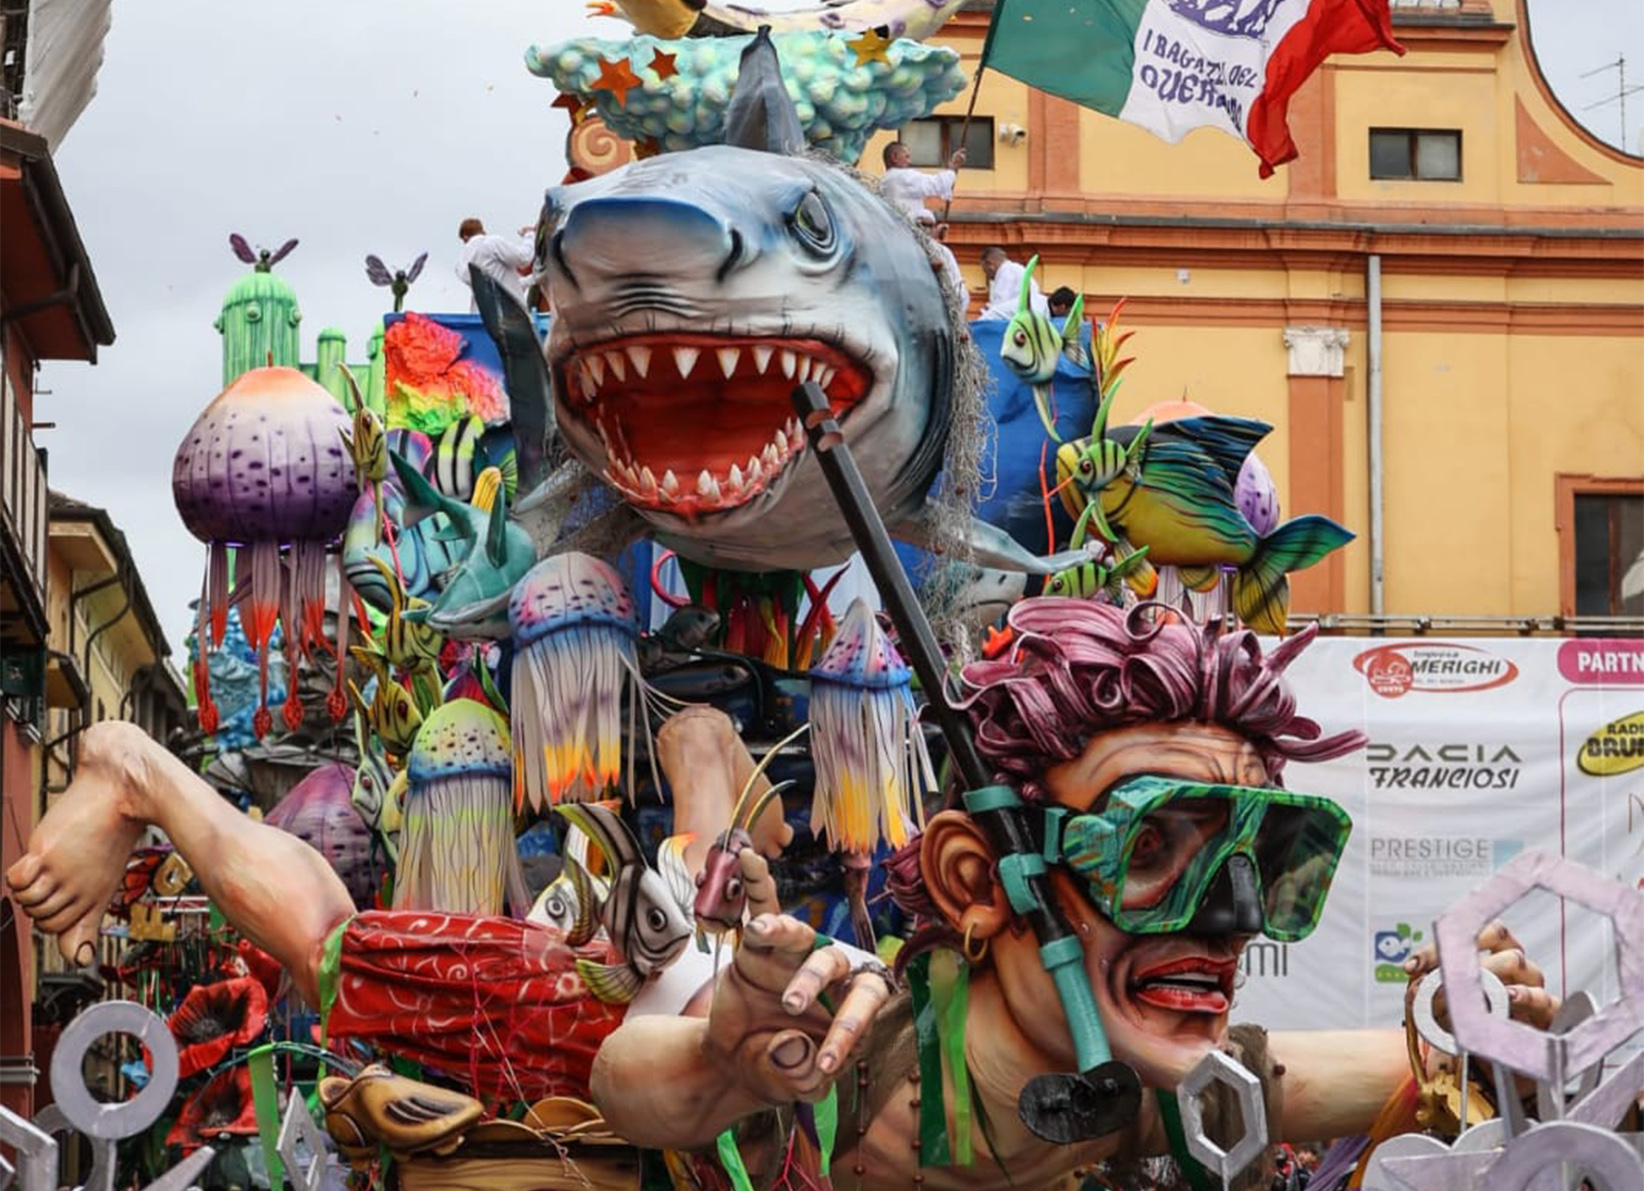 Cento  (Ferrara):  Carnevale d’Europa:  intervista all'associazione carnevalesca I Ragazzi del Guercino